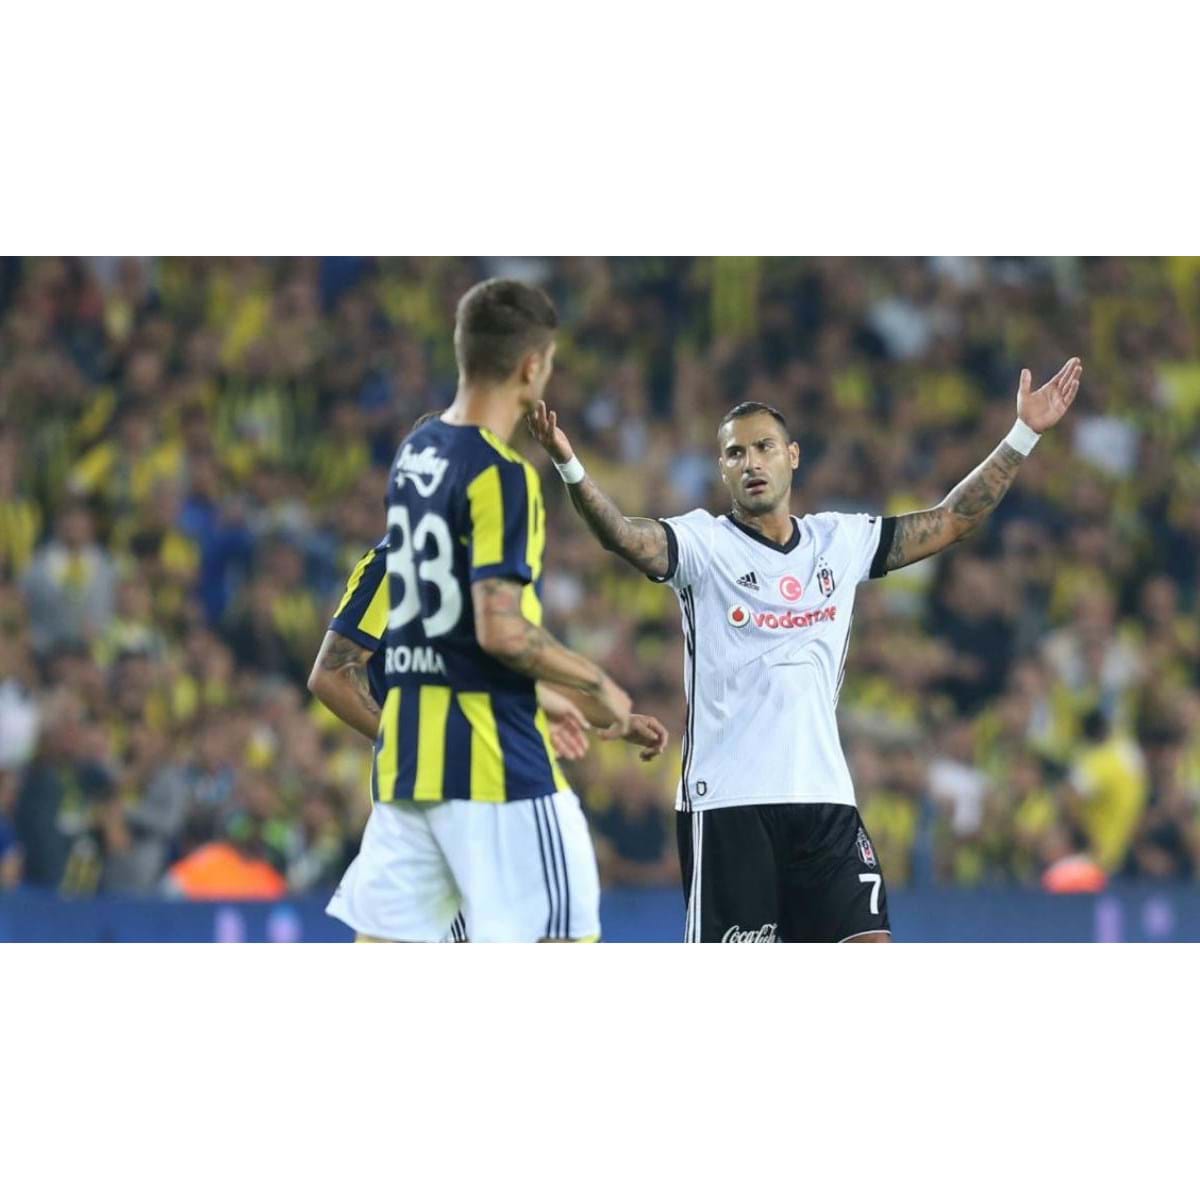 Giuliano marca em clássico com cinco expulsões, e Fenerbahçe vence o  Besiktas, futebol internacional